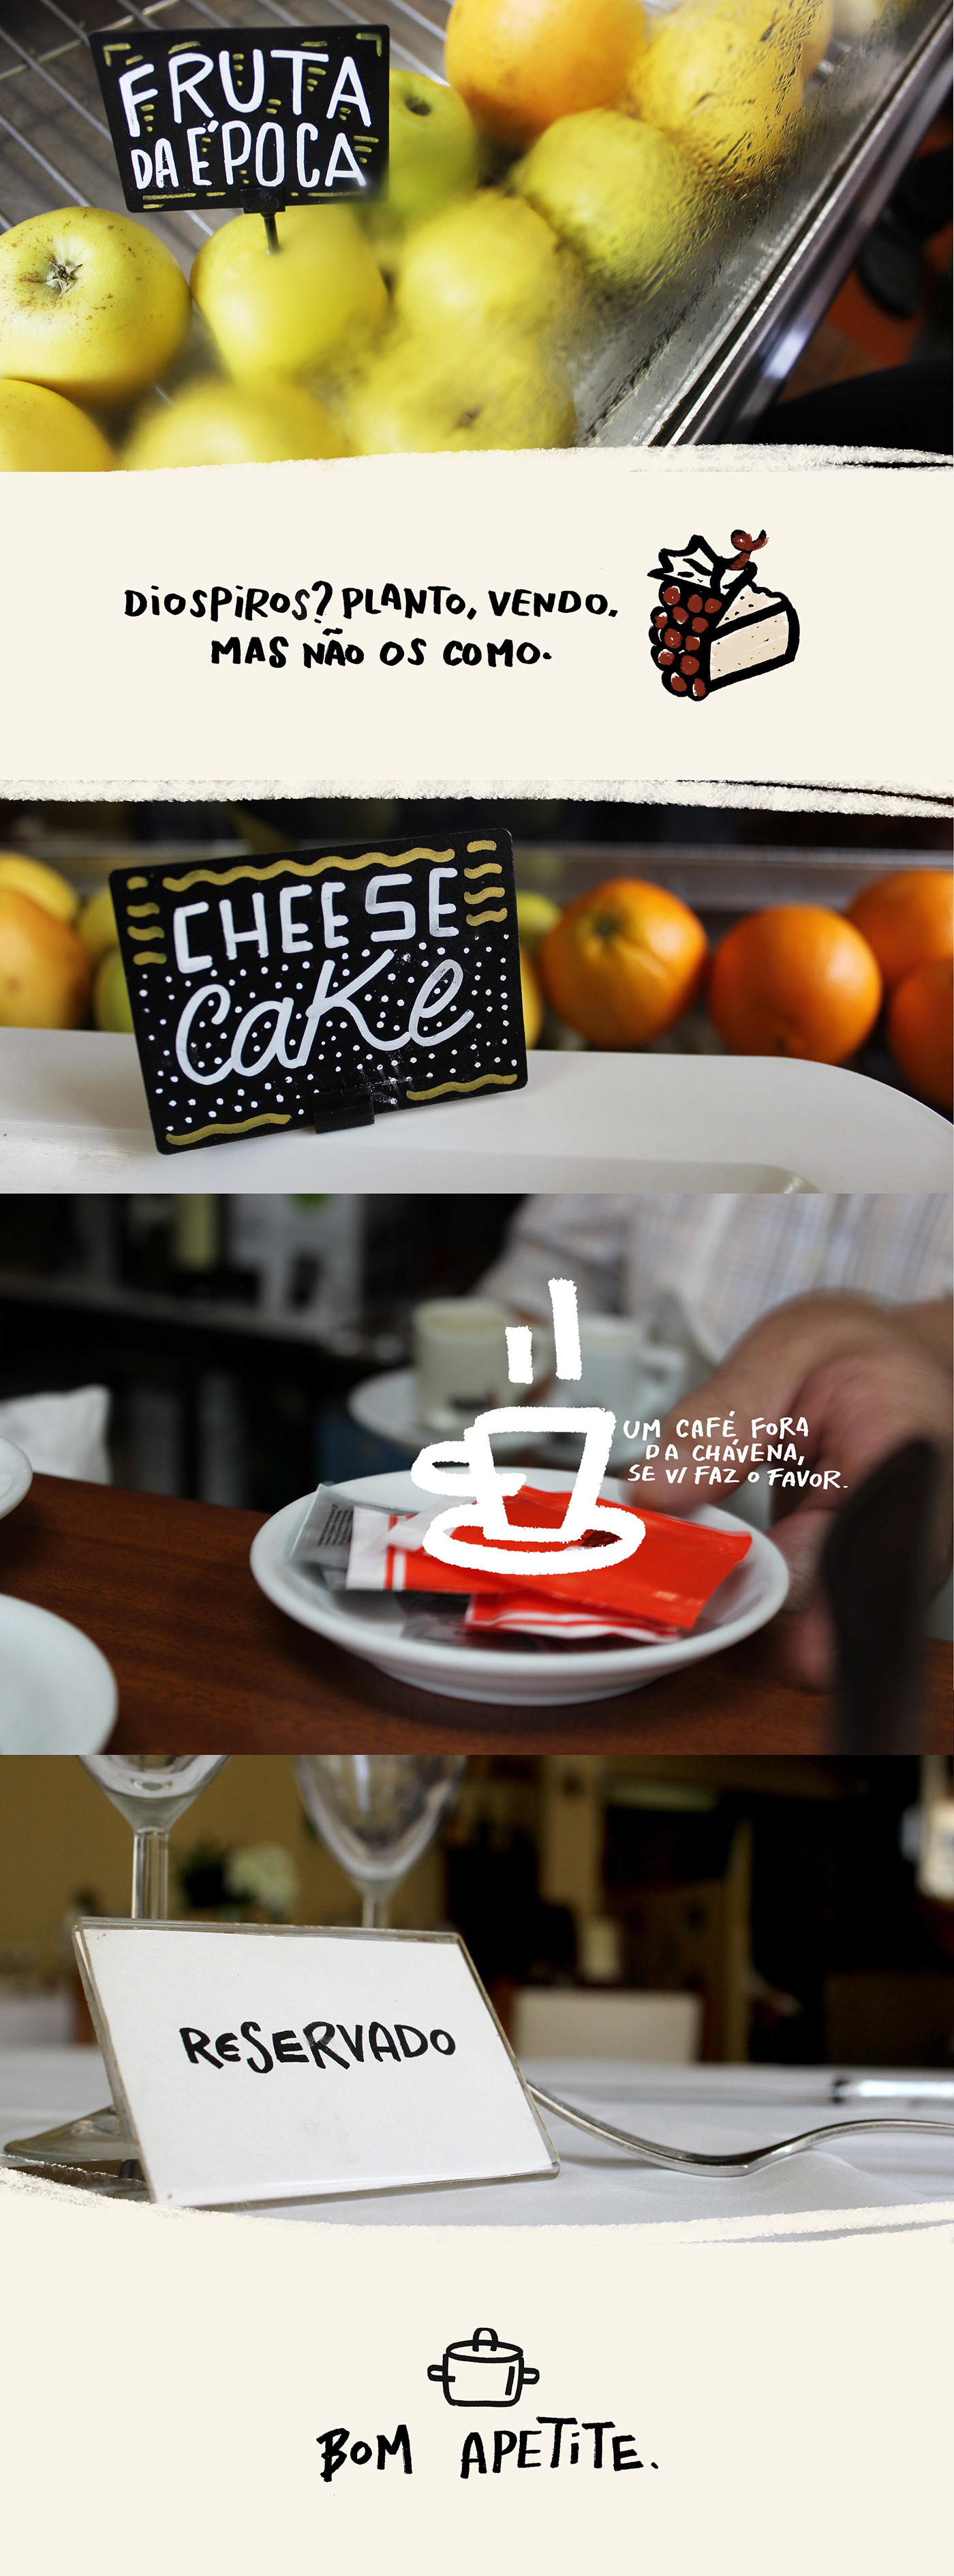 branding  graphic design  menu restaurant traditional logo Logo Design Portugal porto Food 